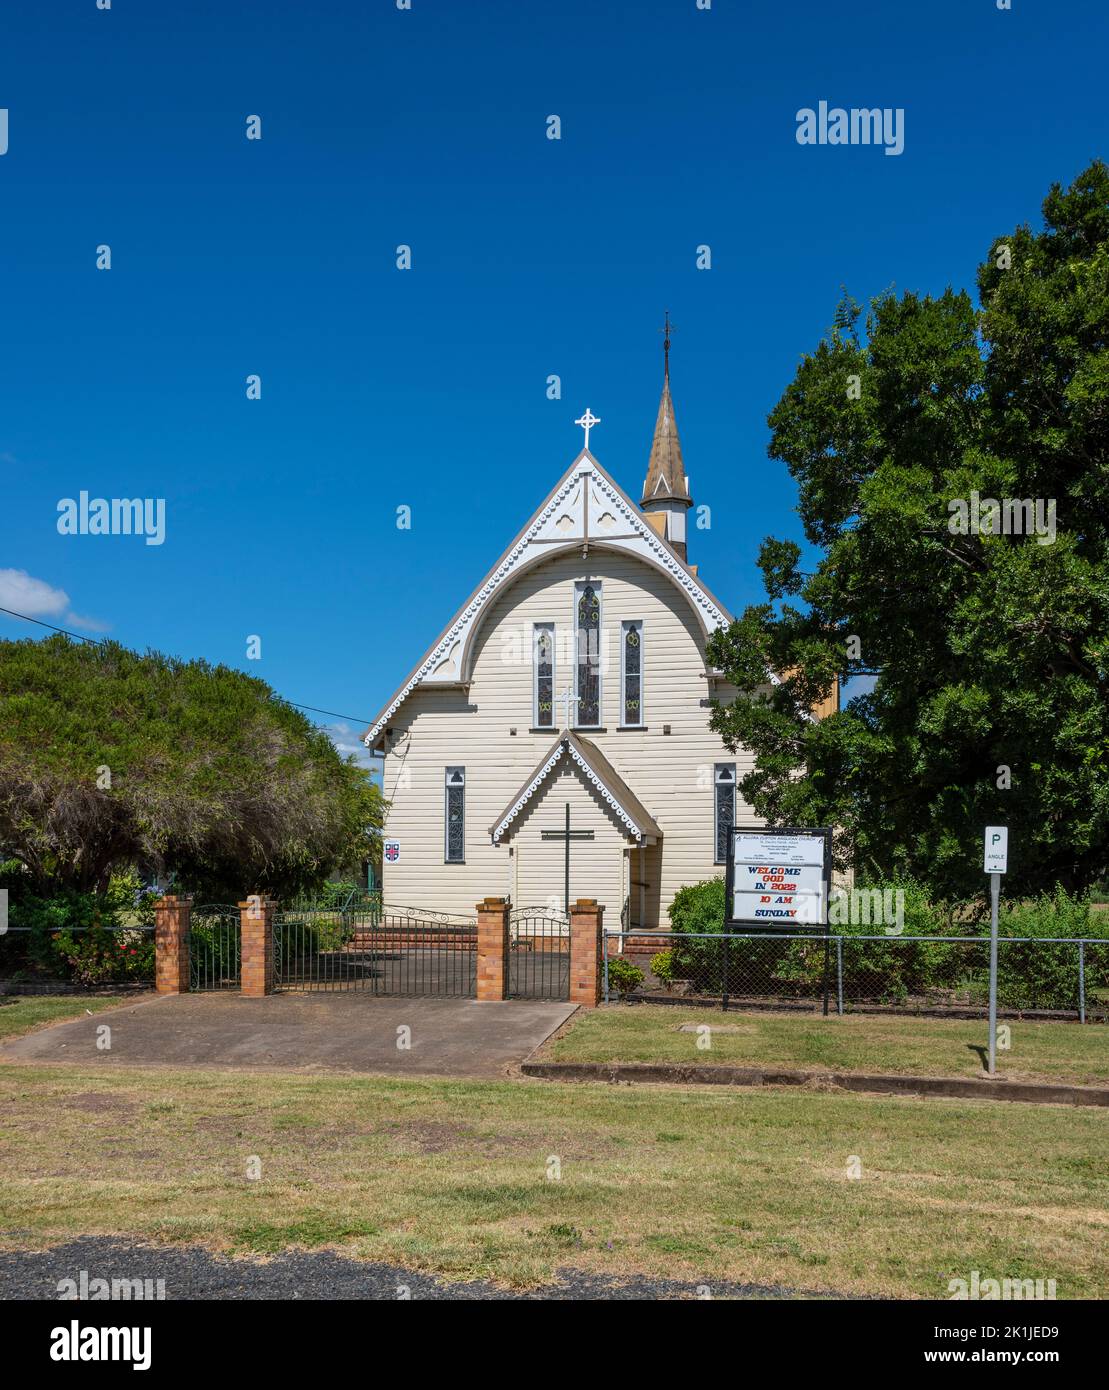 La chiesa anglicana di St Davids è una chiesa patrimonio dell'umanità, situata a 1 Church Street, Allora, Southern Downs Region, Queensland, Australia Foto Stock